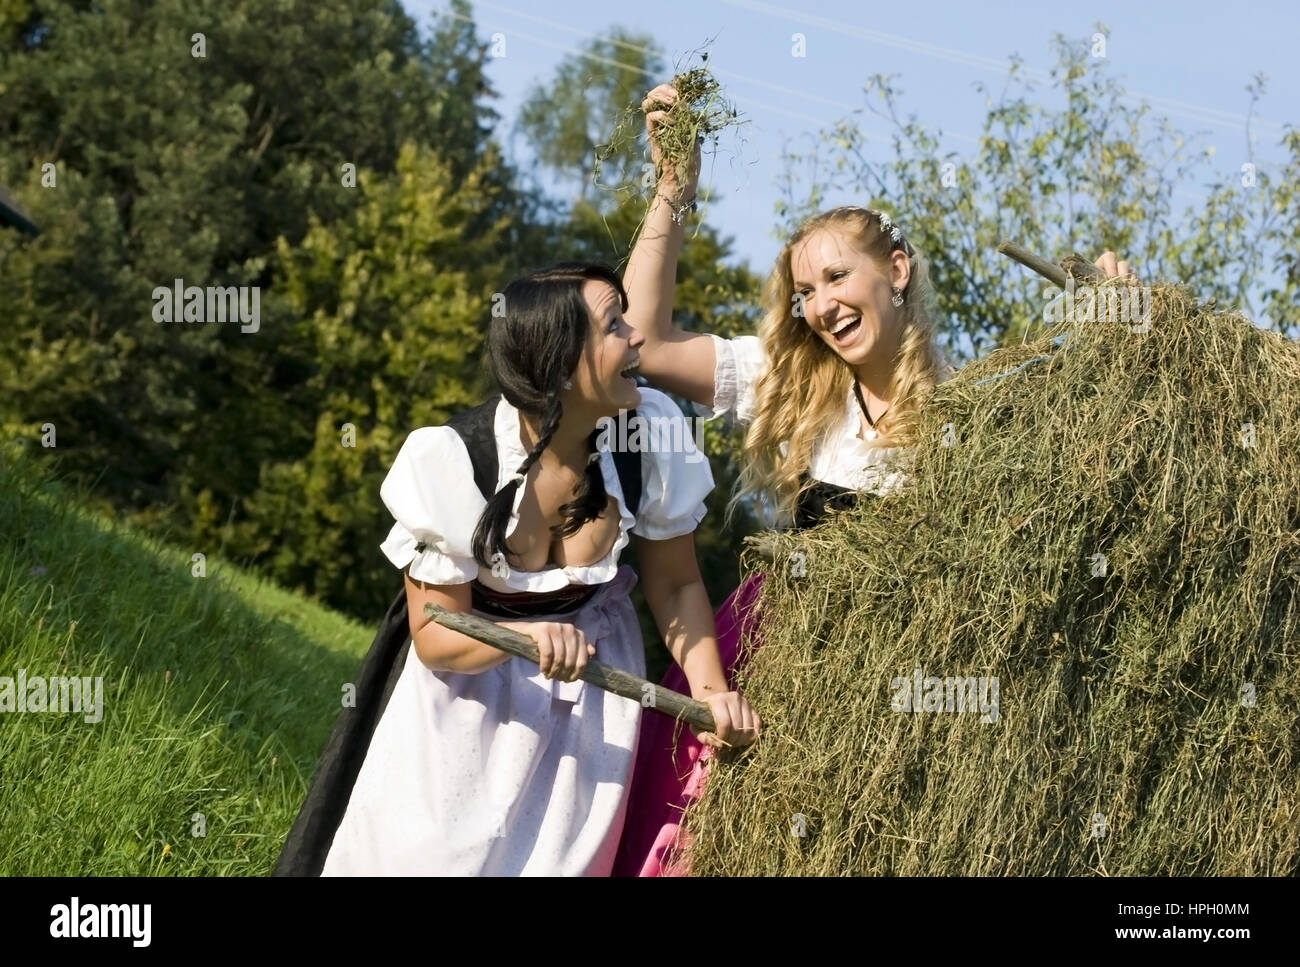 Model released , Zwei junge Frauen im Dirndl bei der Heuarbeit - women in dirndl do hay harvest Stock Photo